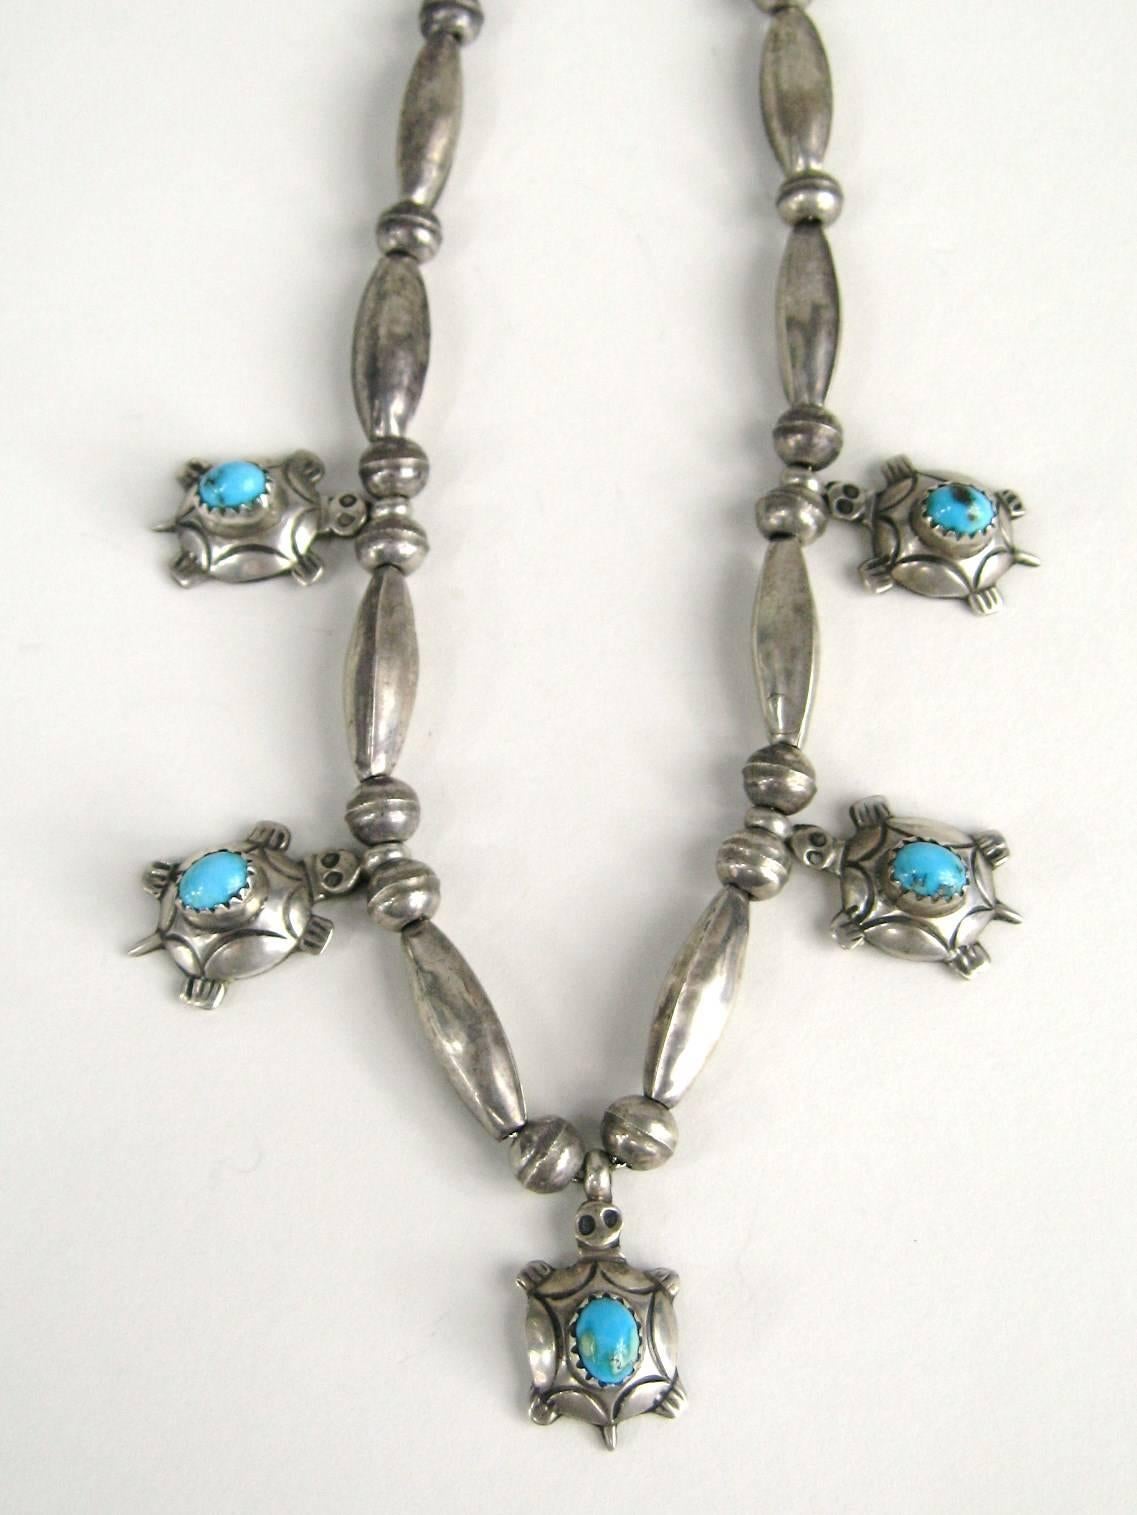 1950er Jahre Sterling Silber Perlenkette mit 5 Schildkröten. Türkis in jeder Schildkröte gesetzt. Messung 16 Zoll. Auf der Rückseite gestempelt. Patina wie vorgefunden. Dies ist aus einer umfangreichen Sammlung von Hopi, Zuni, Navajo, Southwestern,